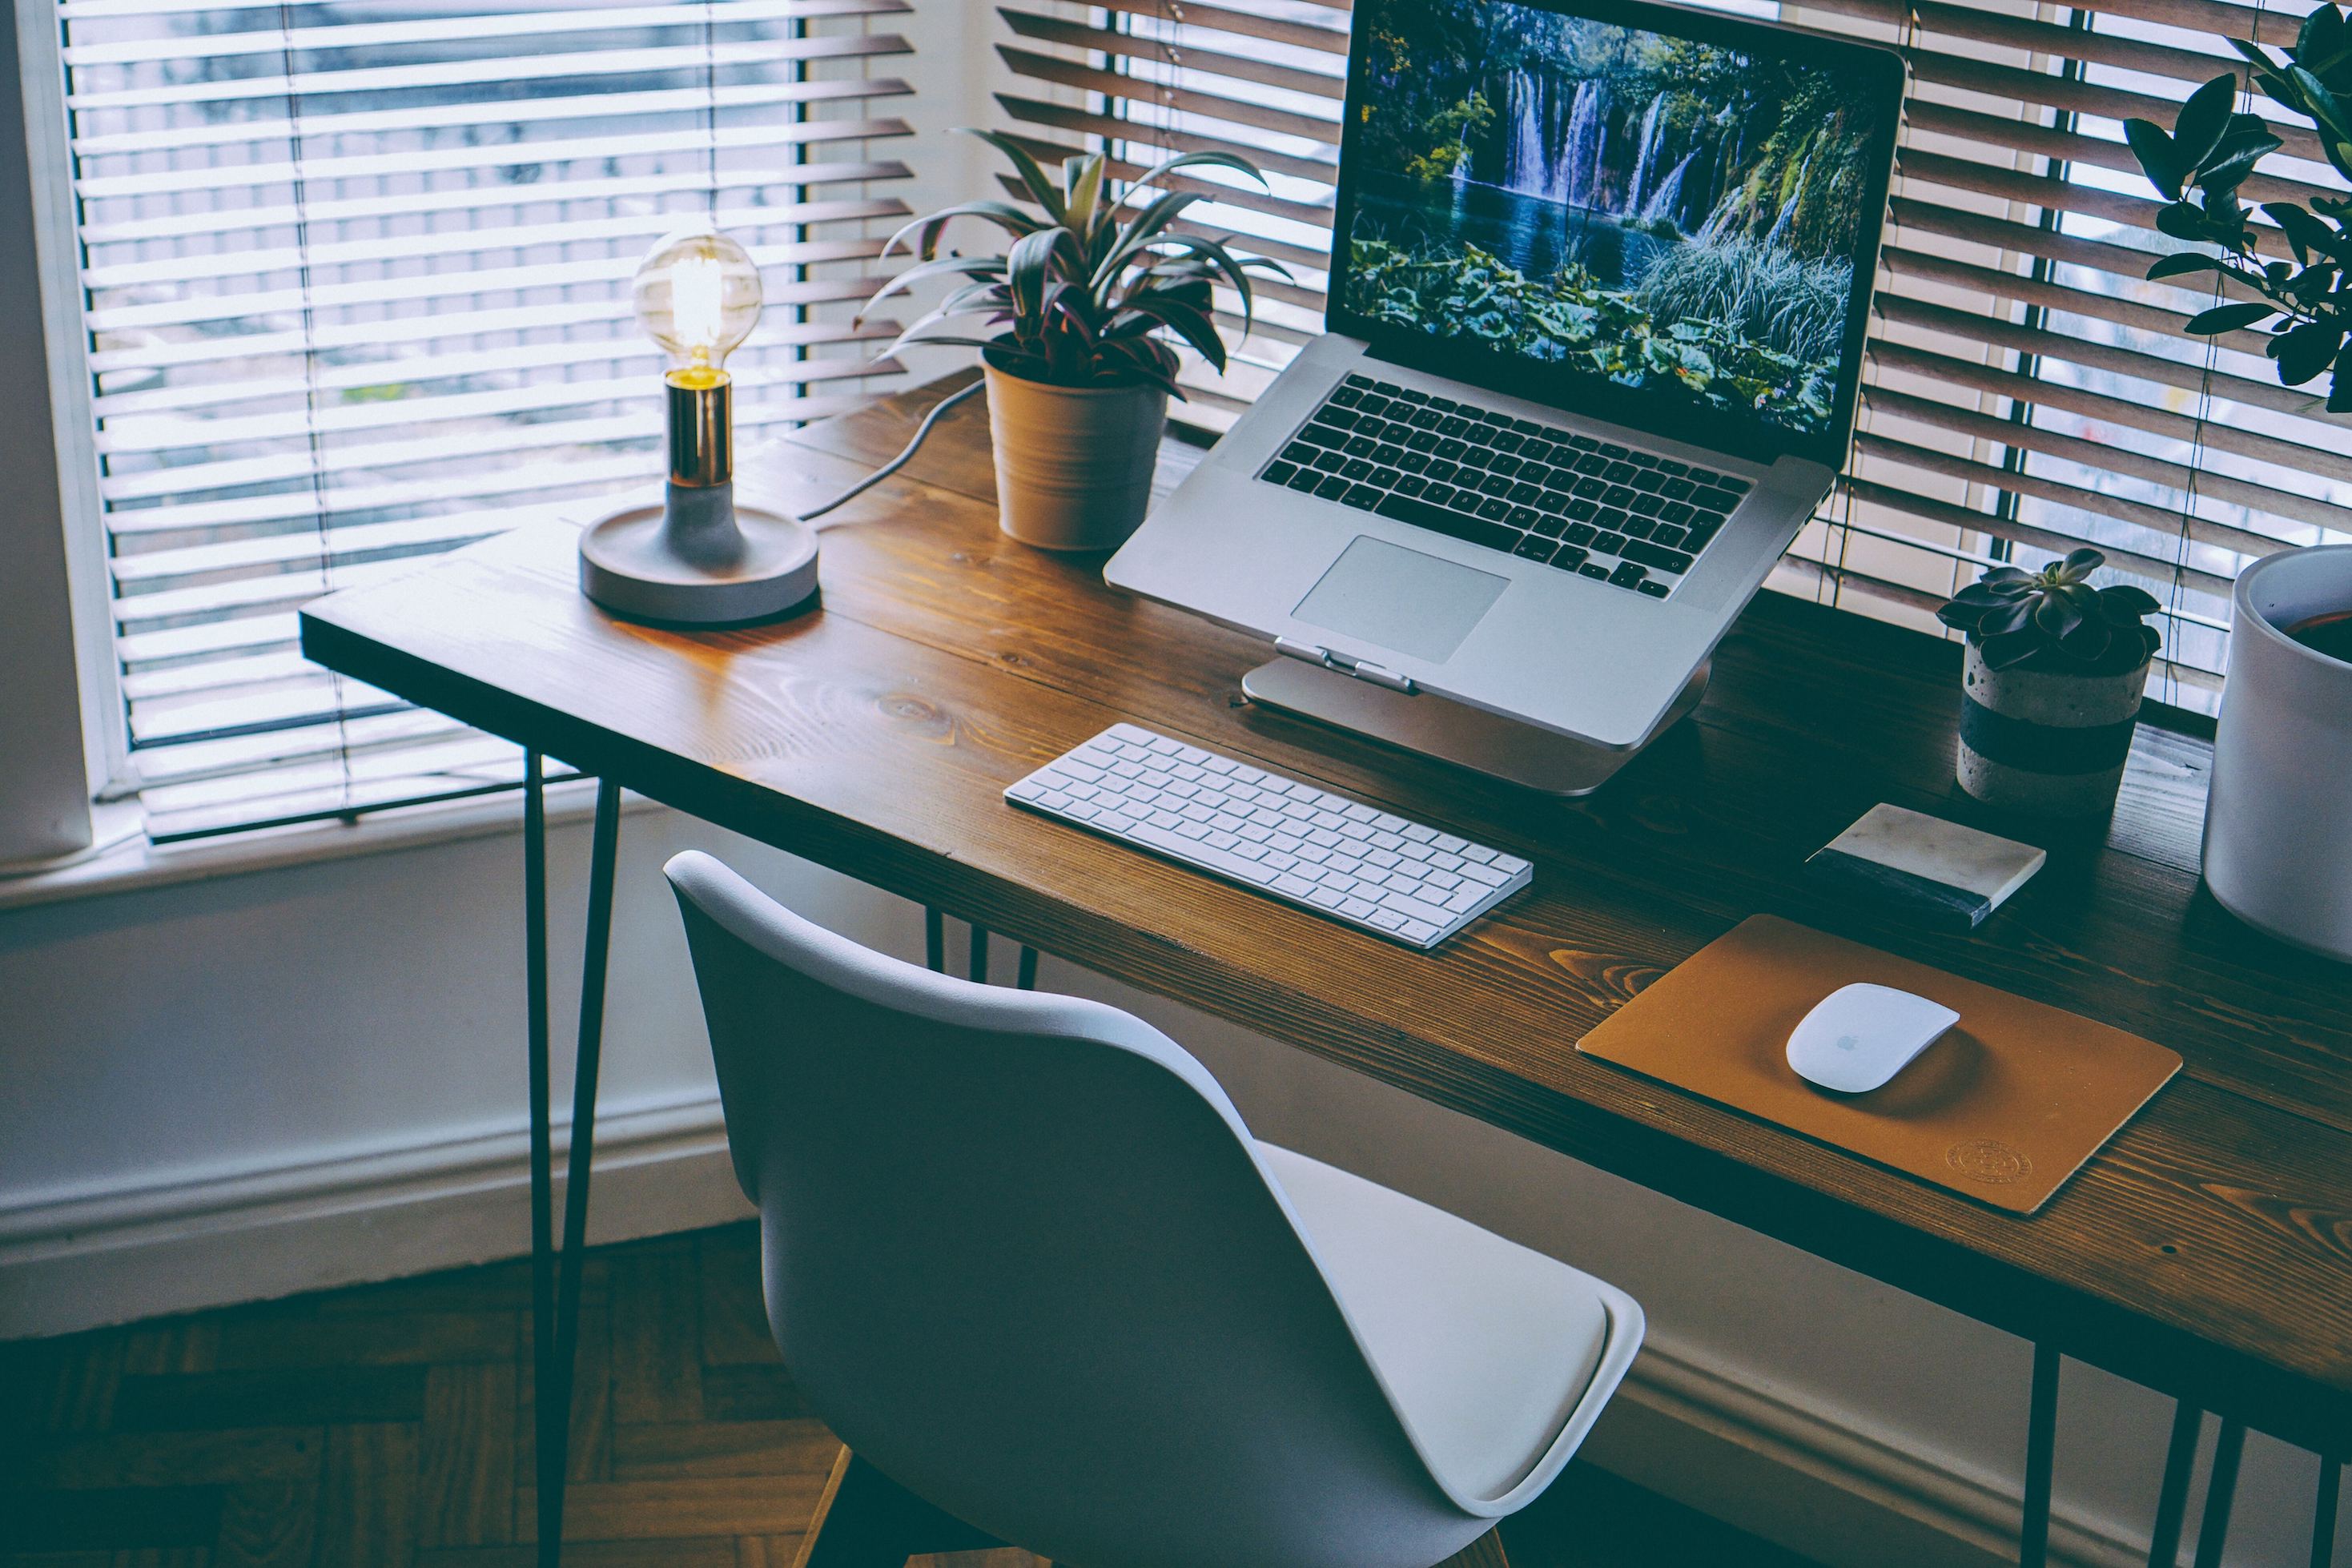 Au bureau dans une entreprise comme en télétravail, un espace de travail confortable et bien organisé favorise la productivité. © nathan-riley, Unsplash